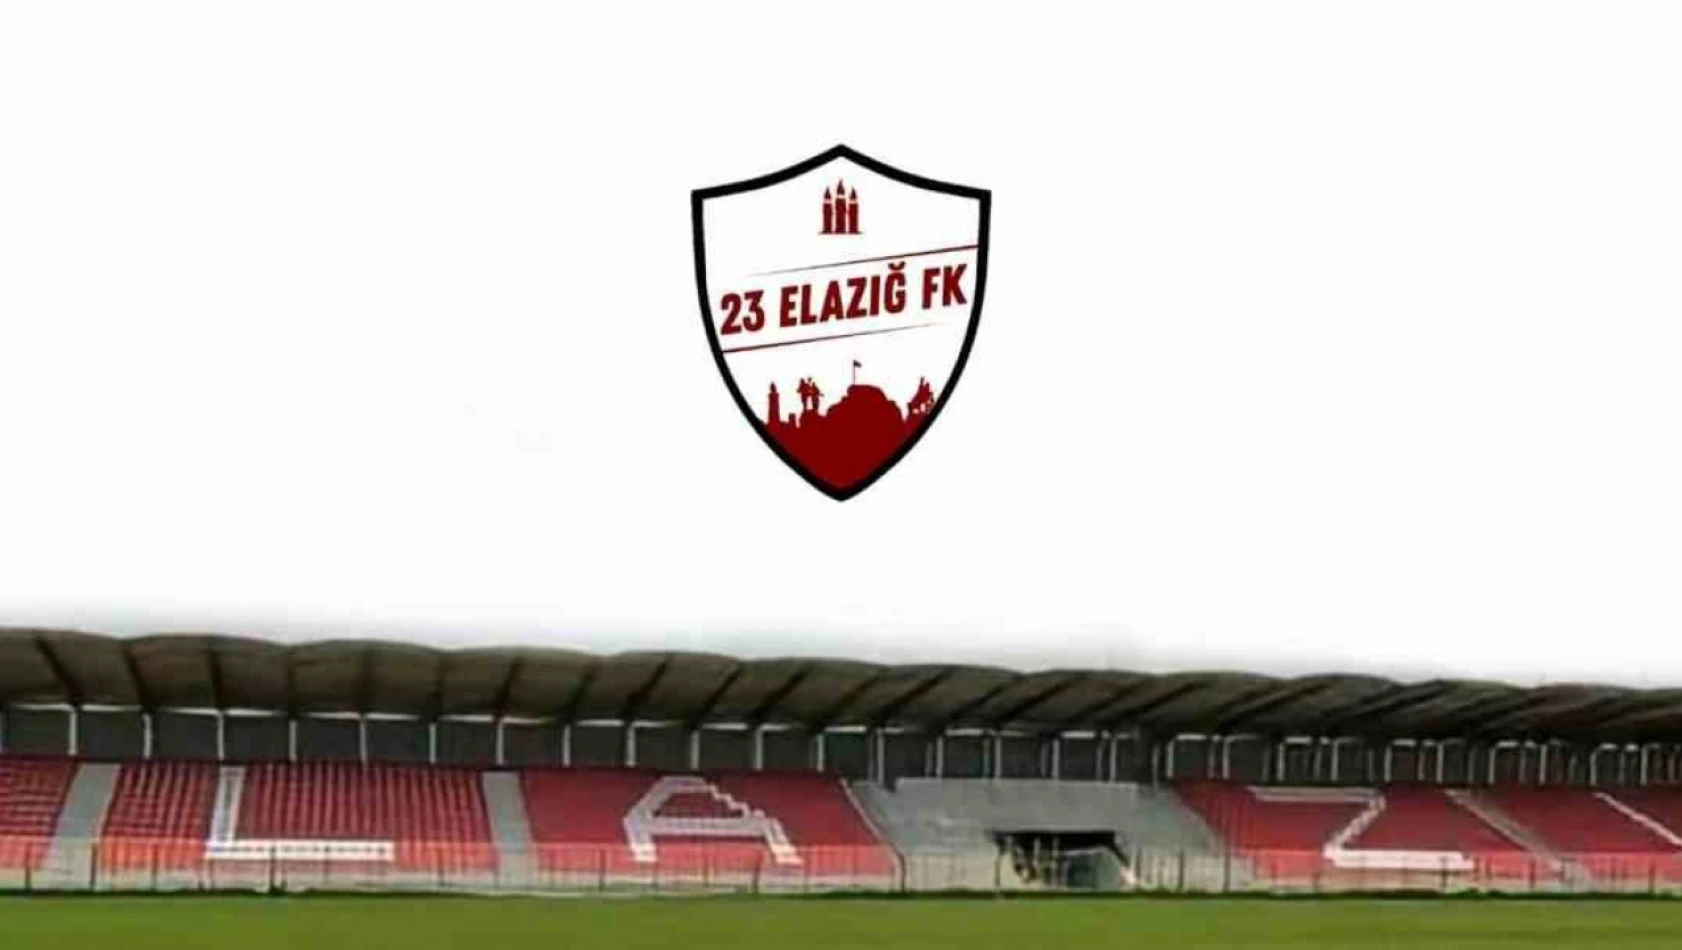 23 Elazığ FK'da Genel Kurul ertelendi